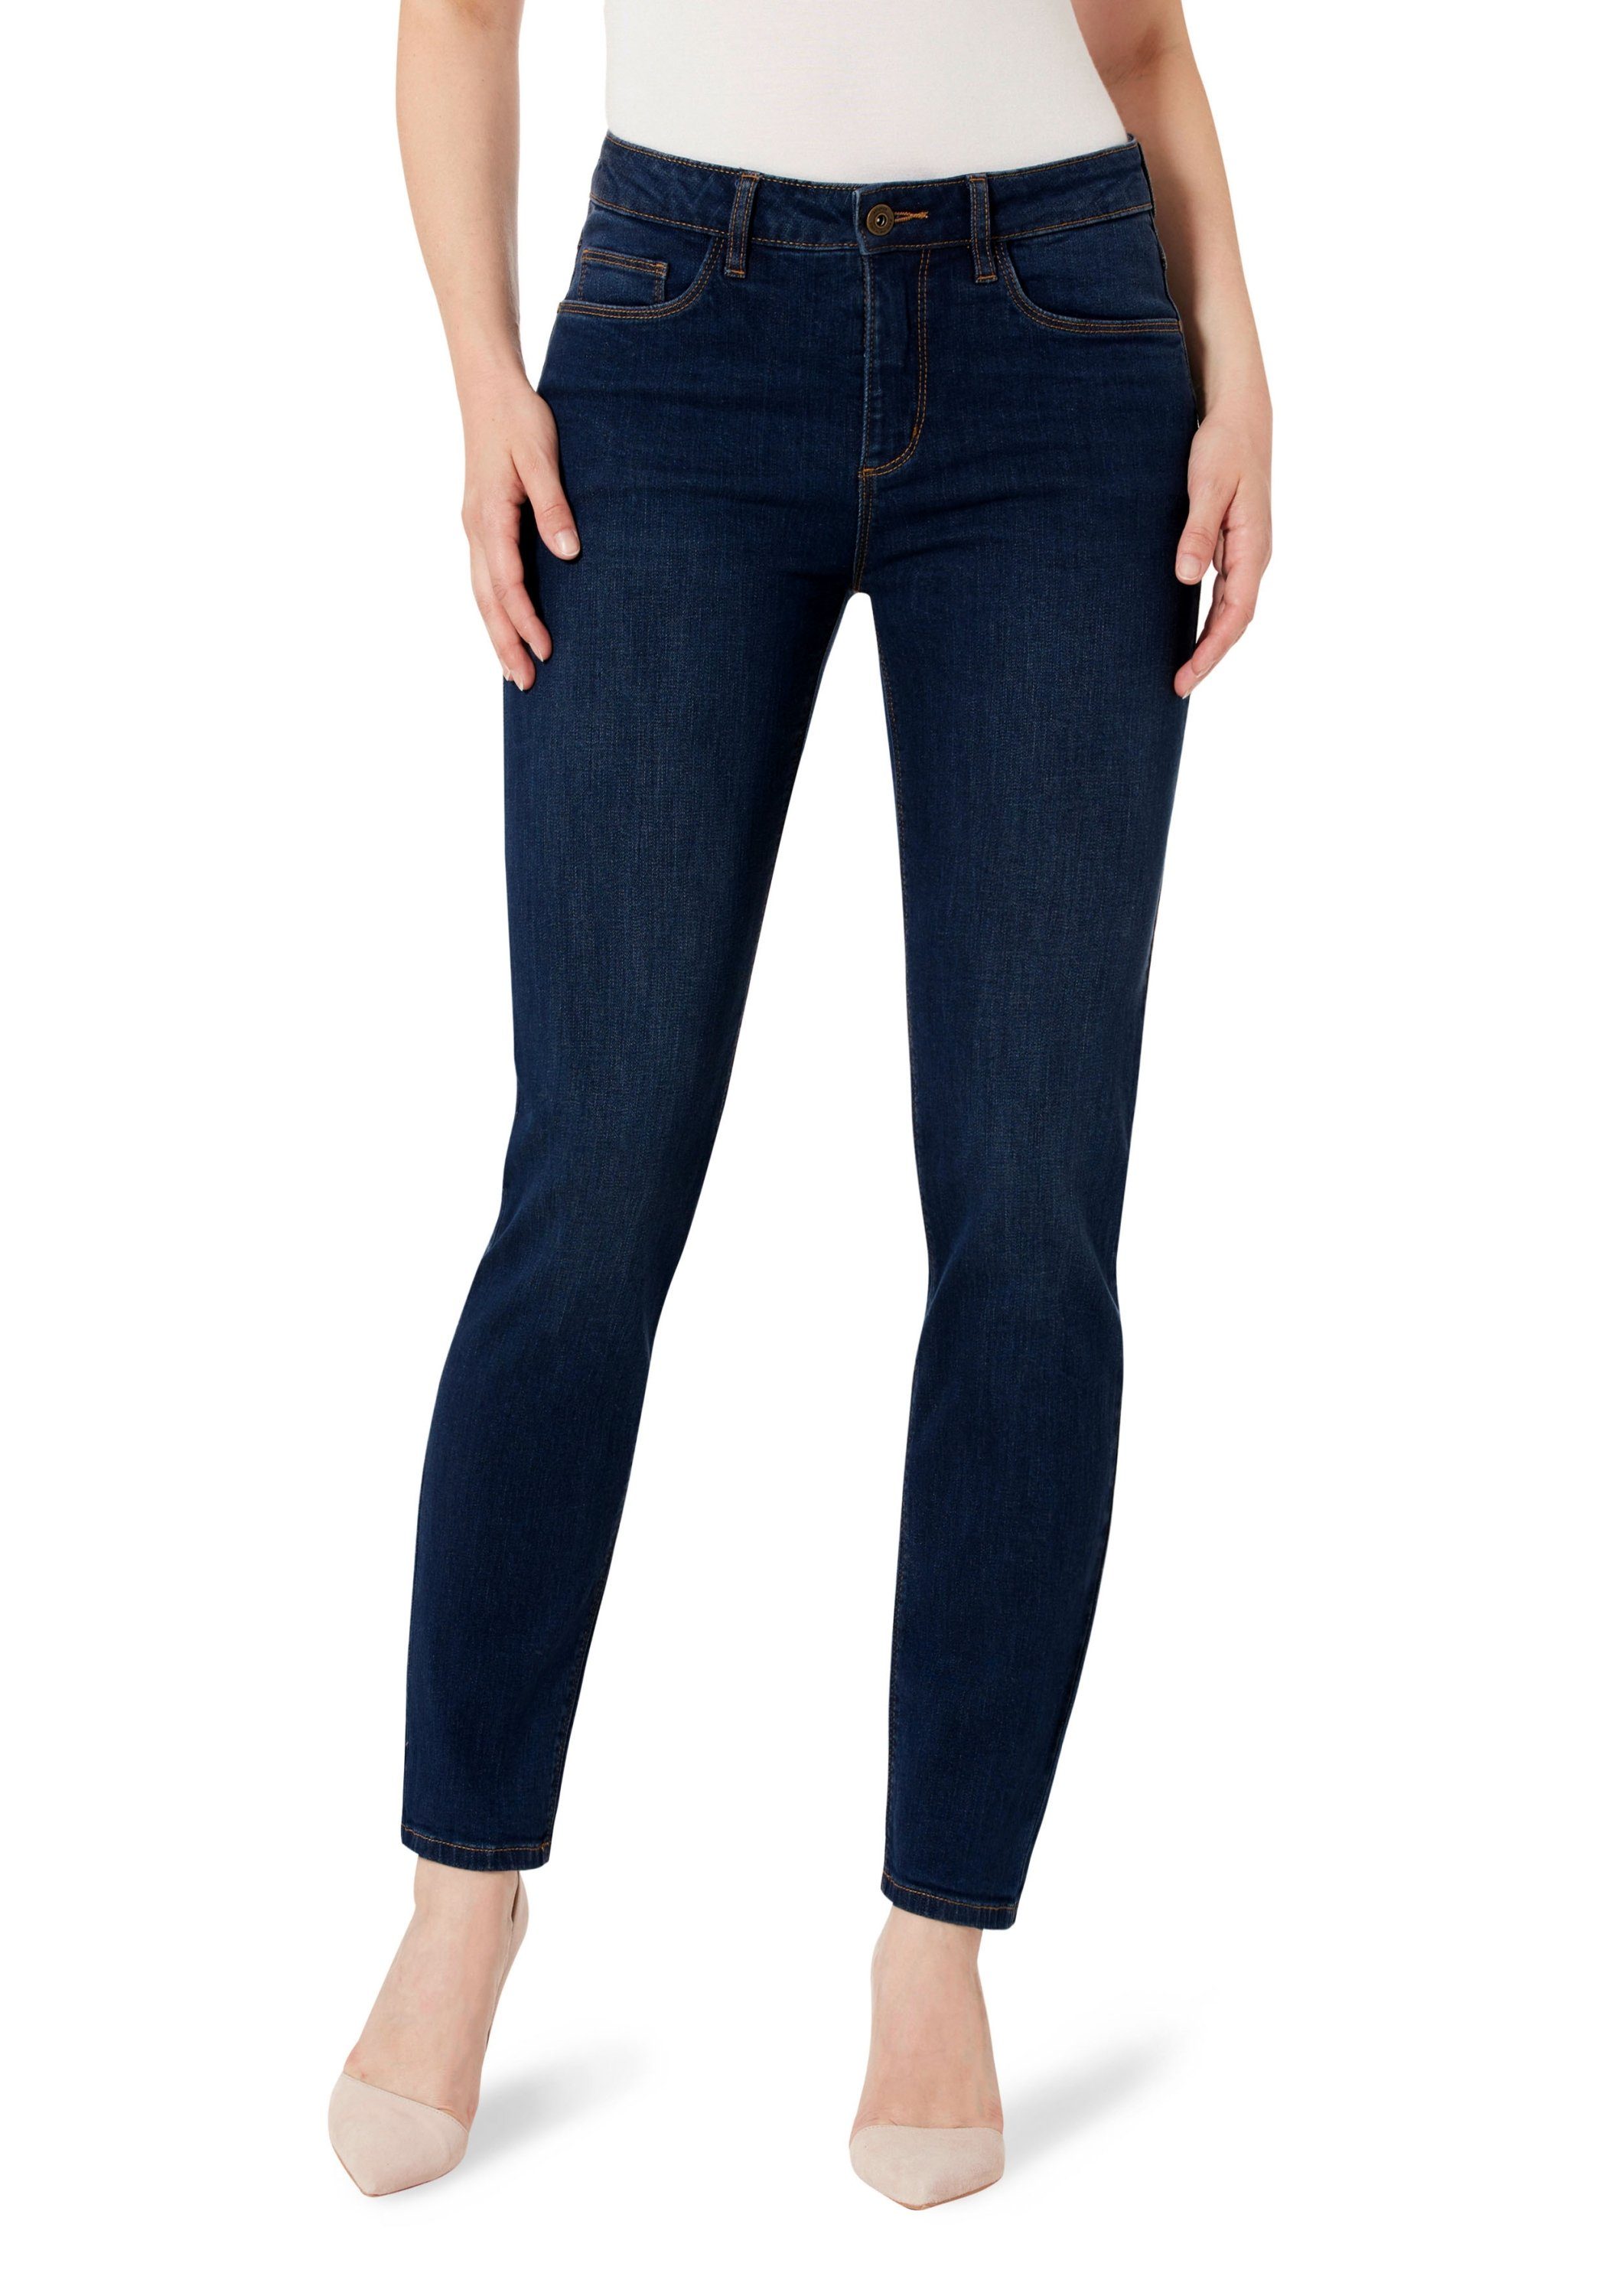 STOOKER WOMEN 5-Pocket-Jeans Da. Hosen lang,36/3